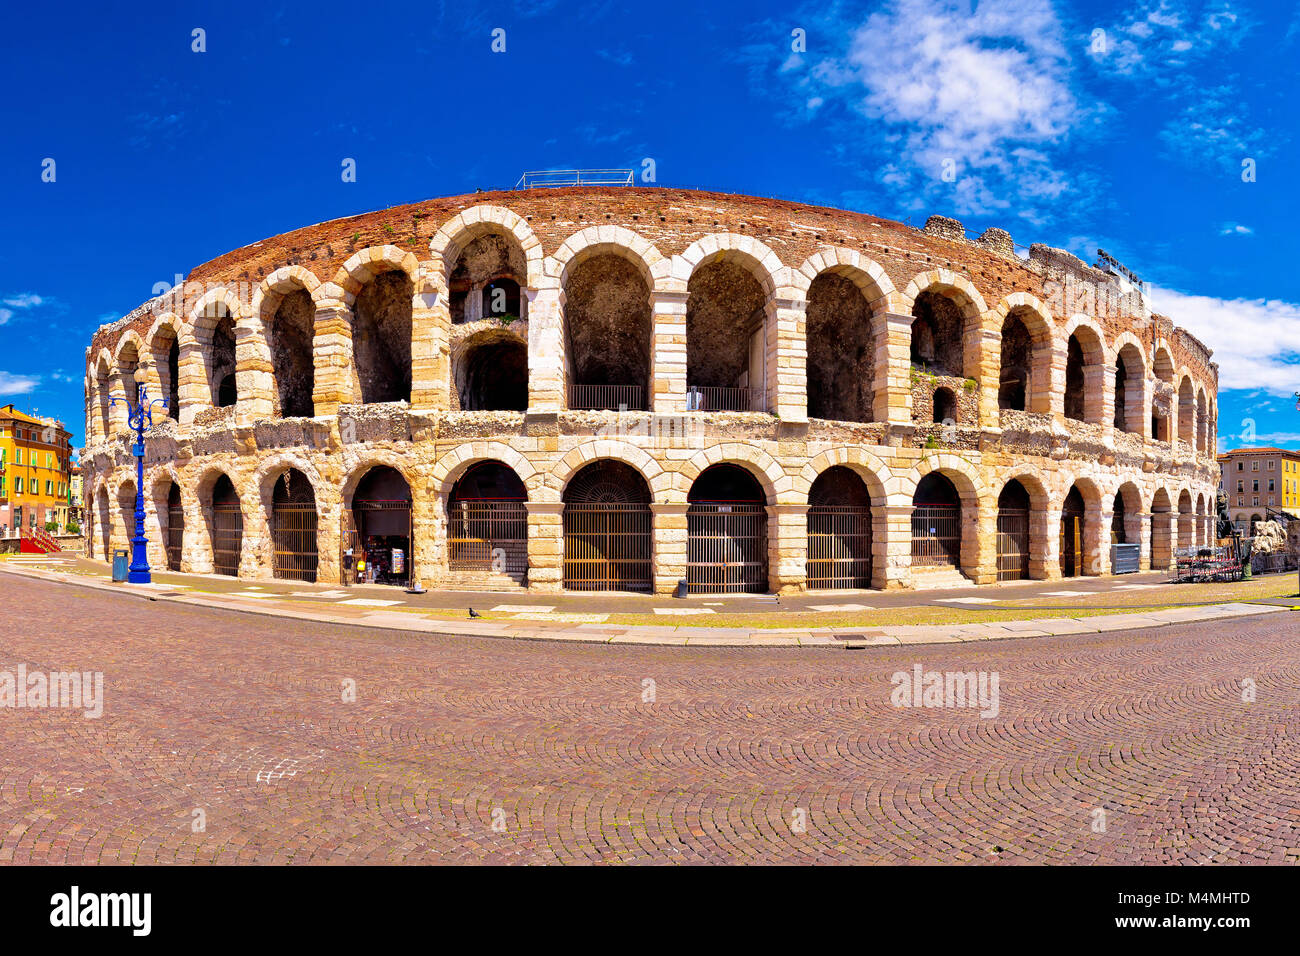 Römischen Amphitheater Arena di Verona und der Piazza Bra square Panoramablick, Sehenswürdigkeiten in der Region Venetien, Italien Stockfoto